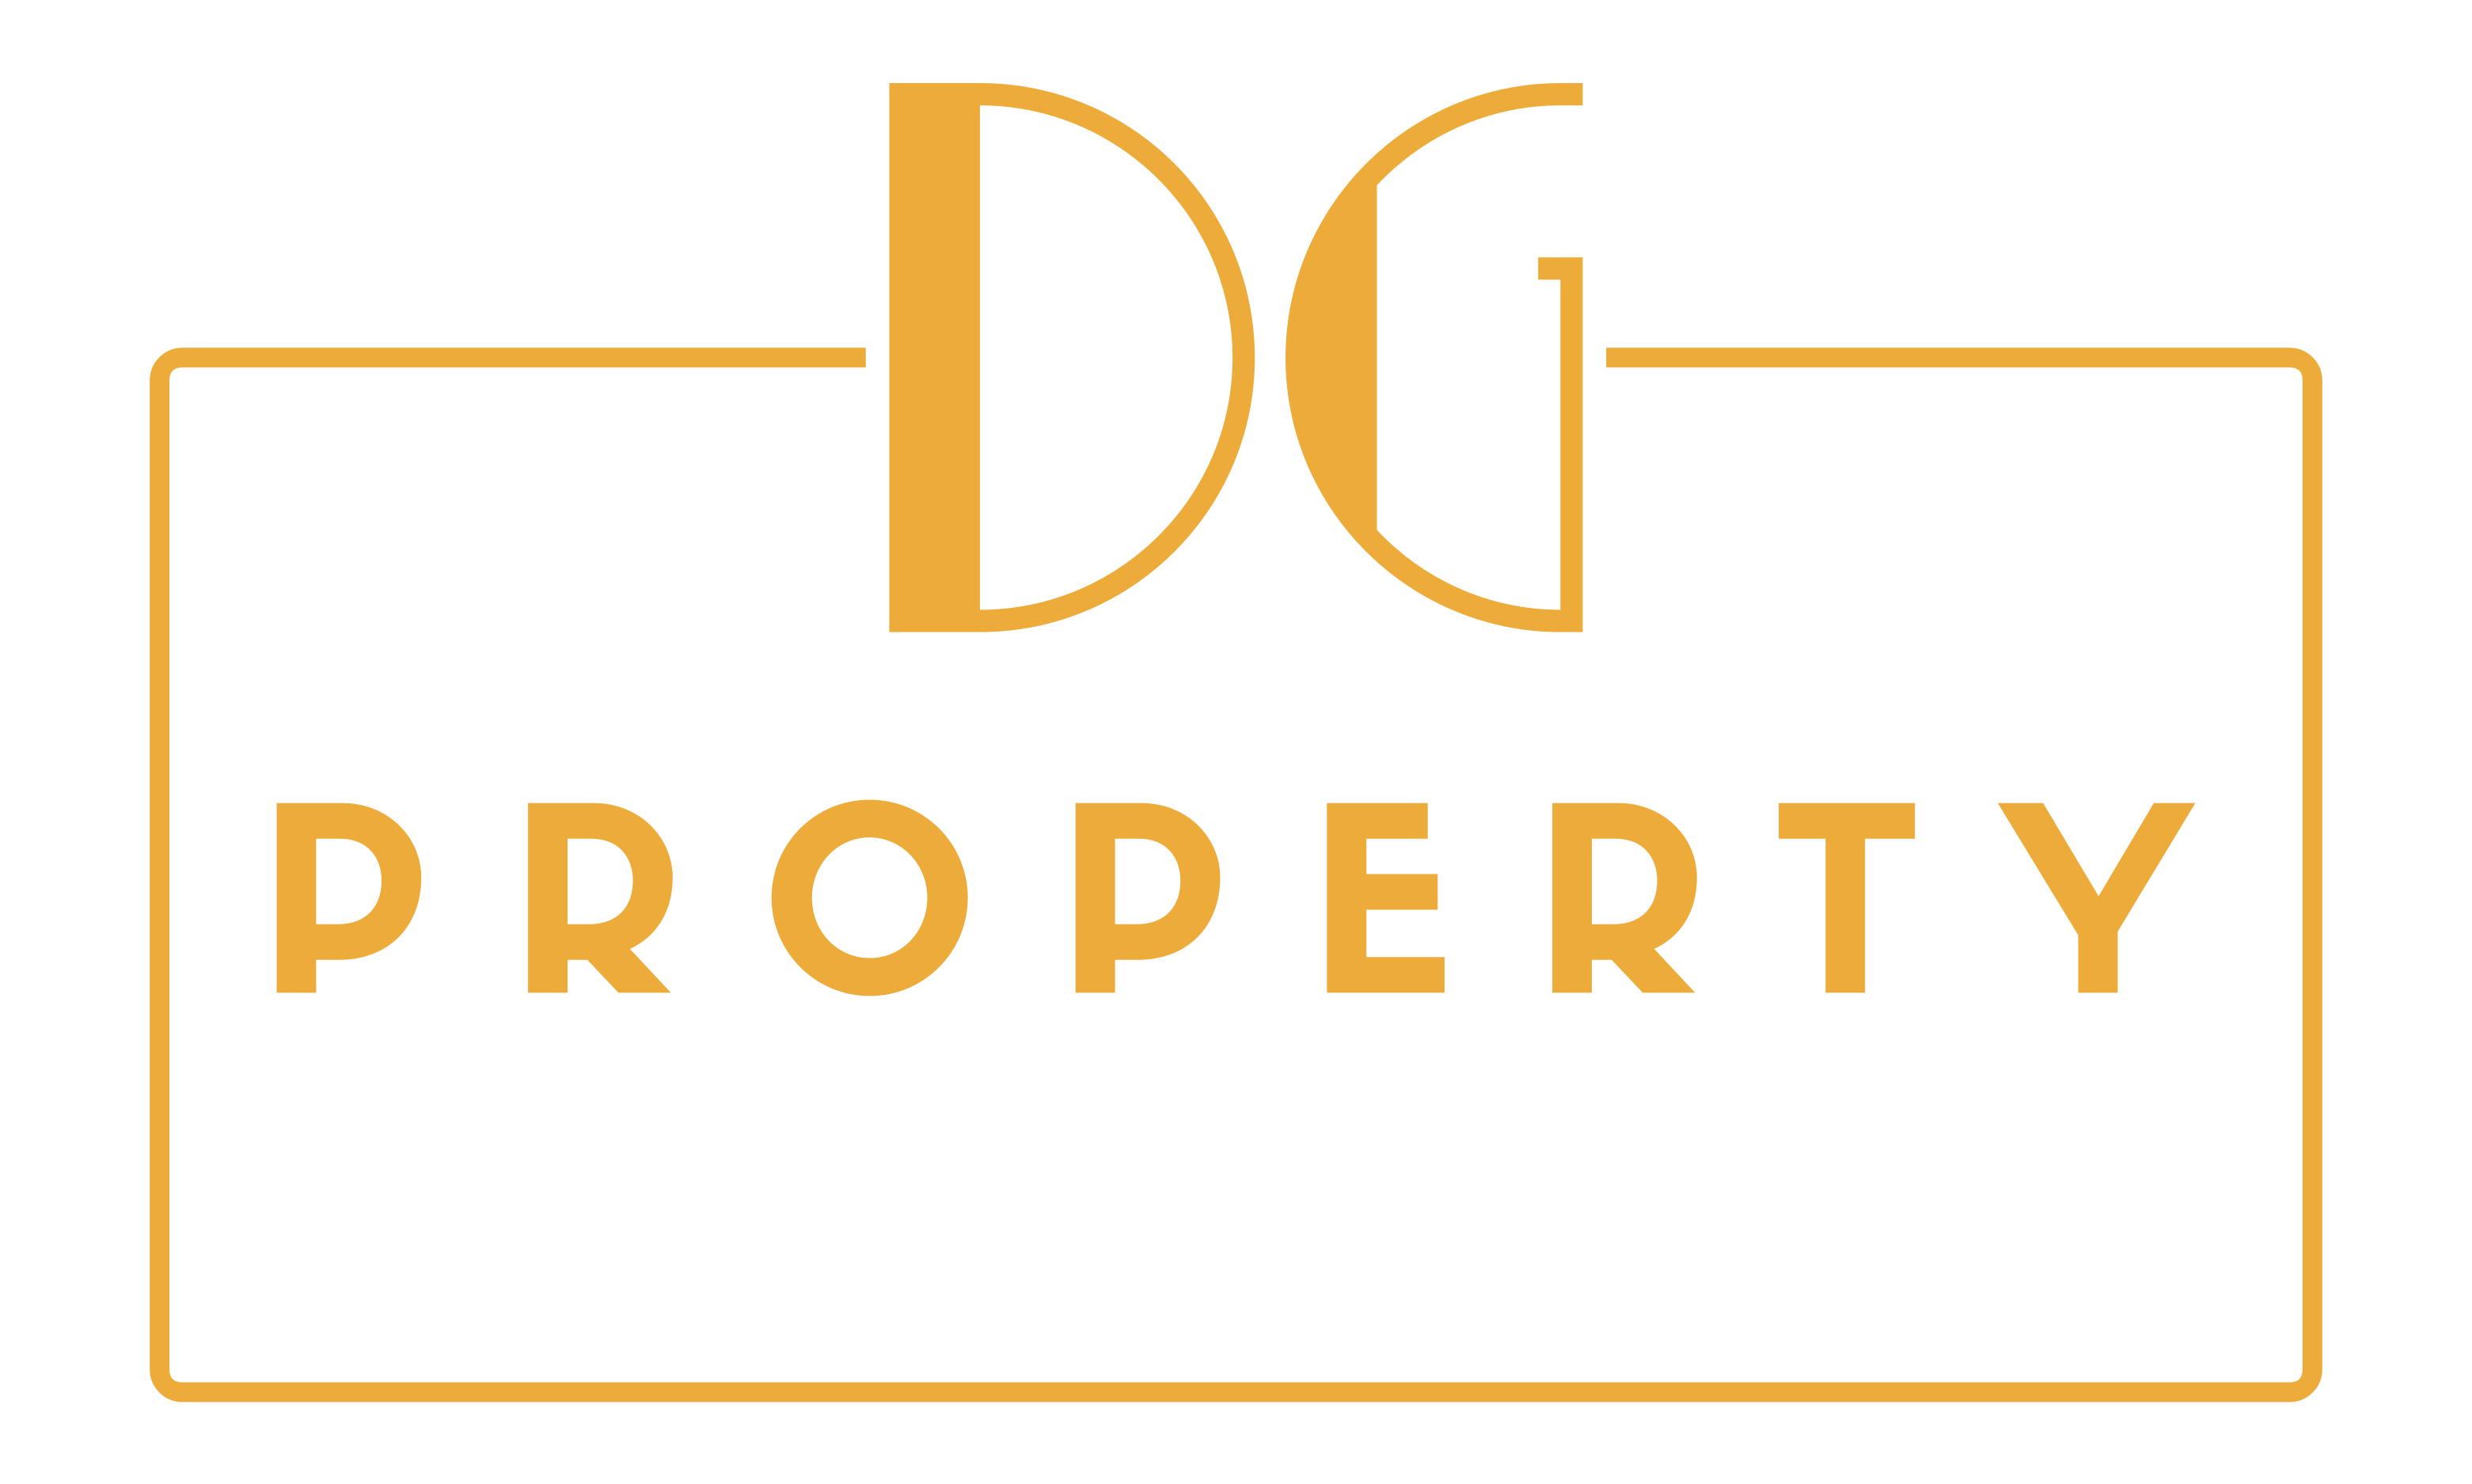 DG Property